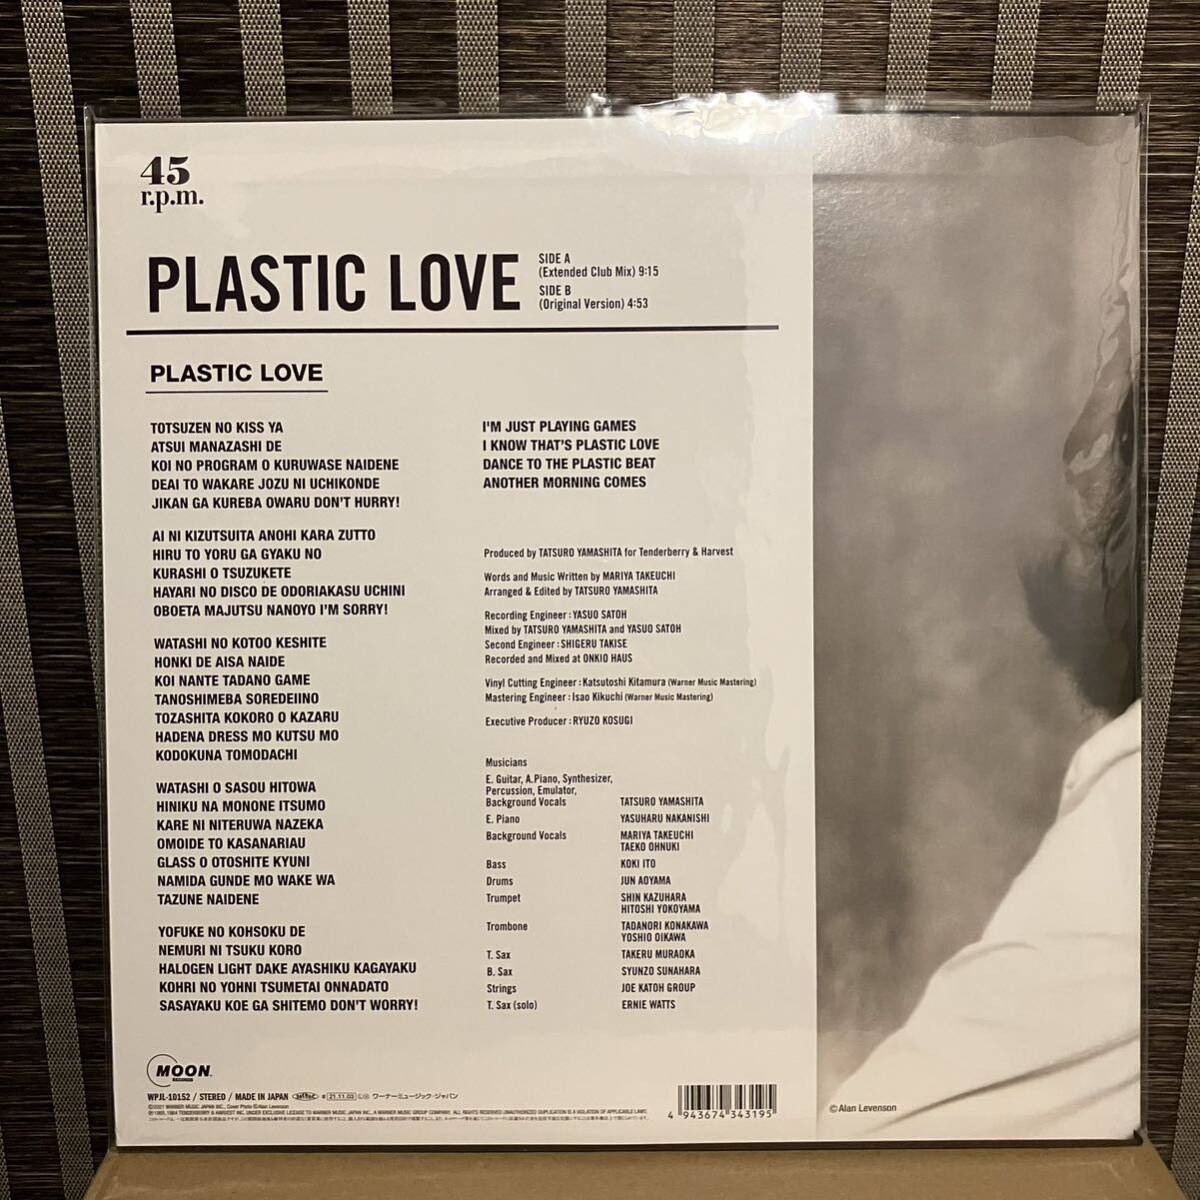 竹内まりや PLASTIC LOVE アナログレコード 1枚組 180g重量盤 特典付き